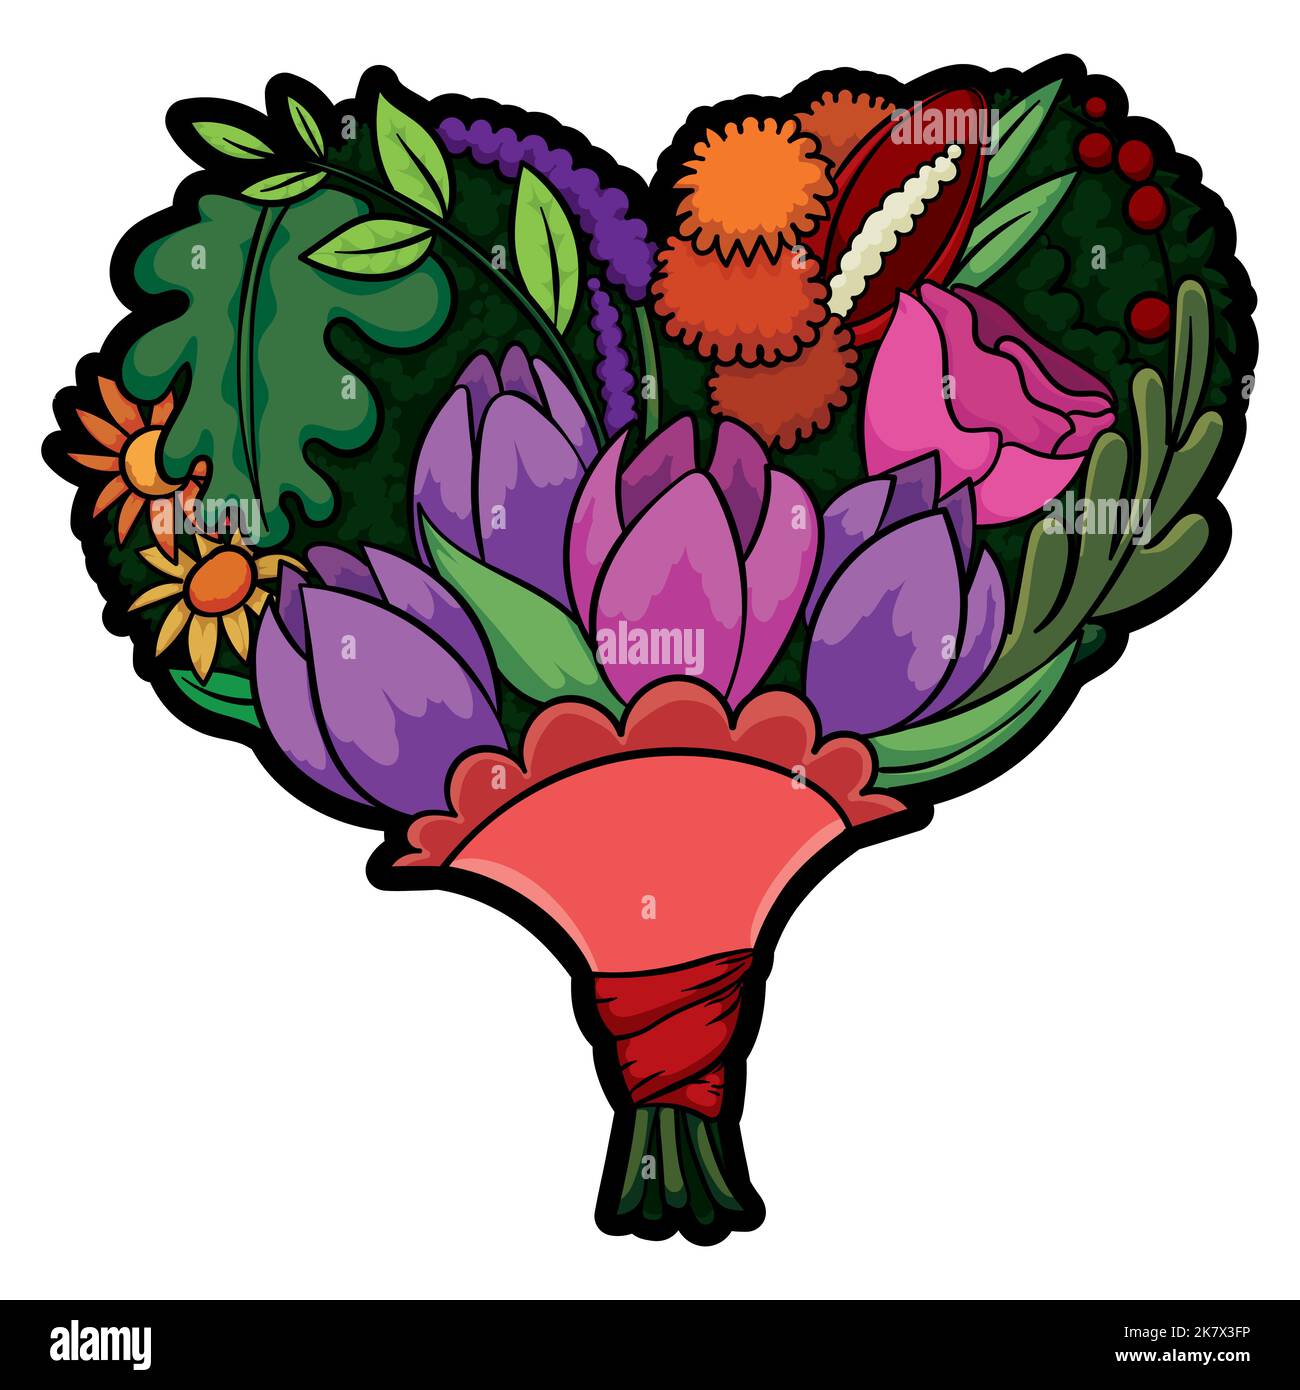 Herzförmiger Blumenstrauß, verziert mit Tulpen, Rosen, Pom-Poms Dahlien, Gänseblümchen, Beeren, Calla lili, Blätter und Laub. Stock Vektor